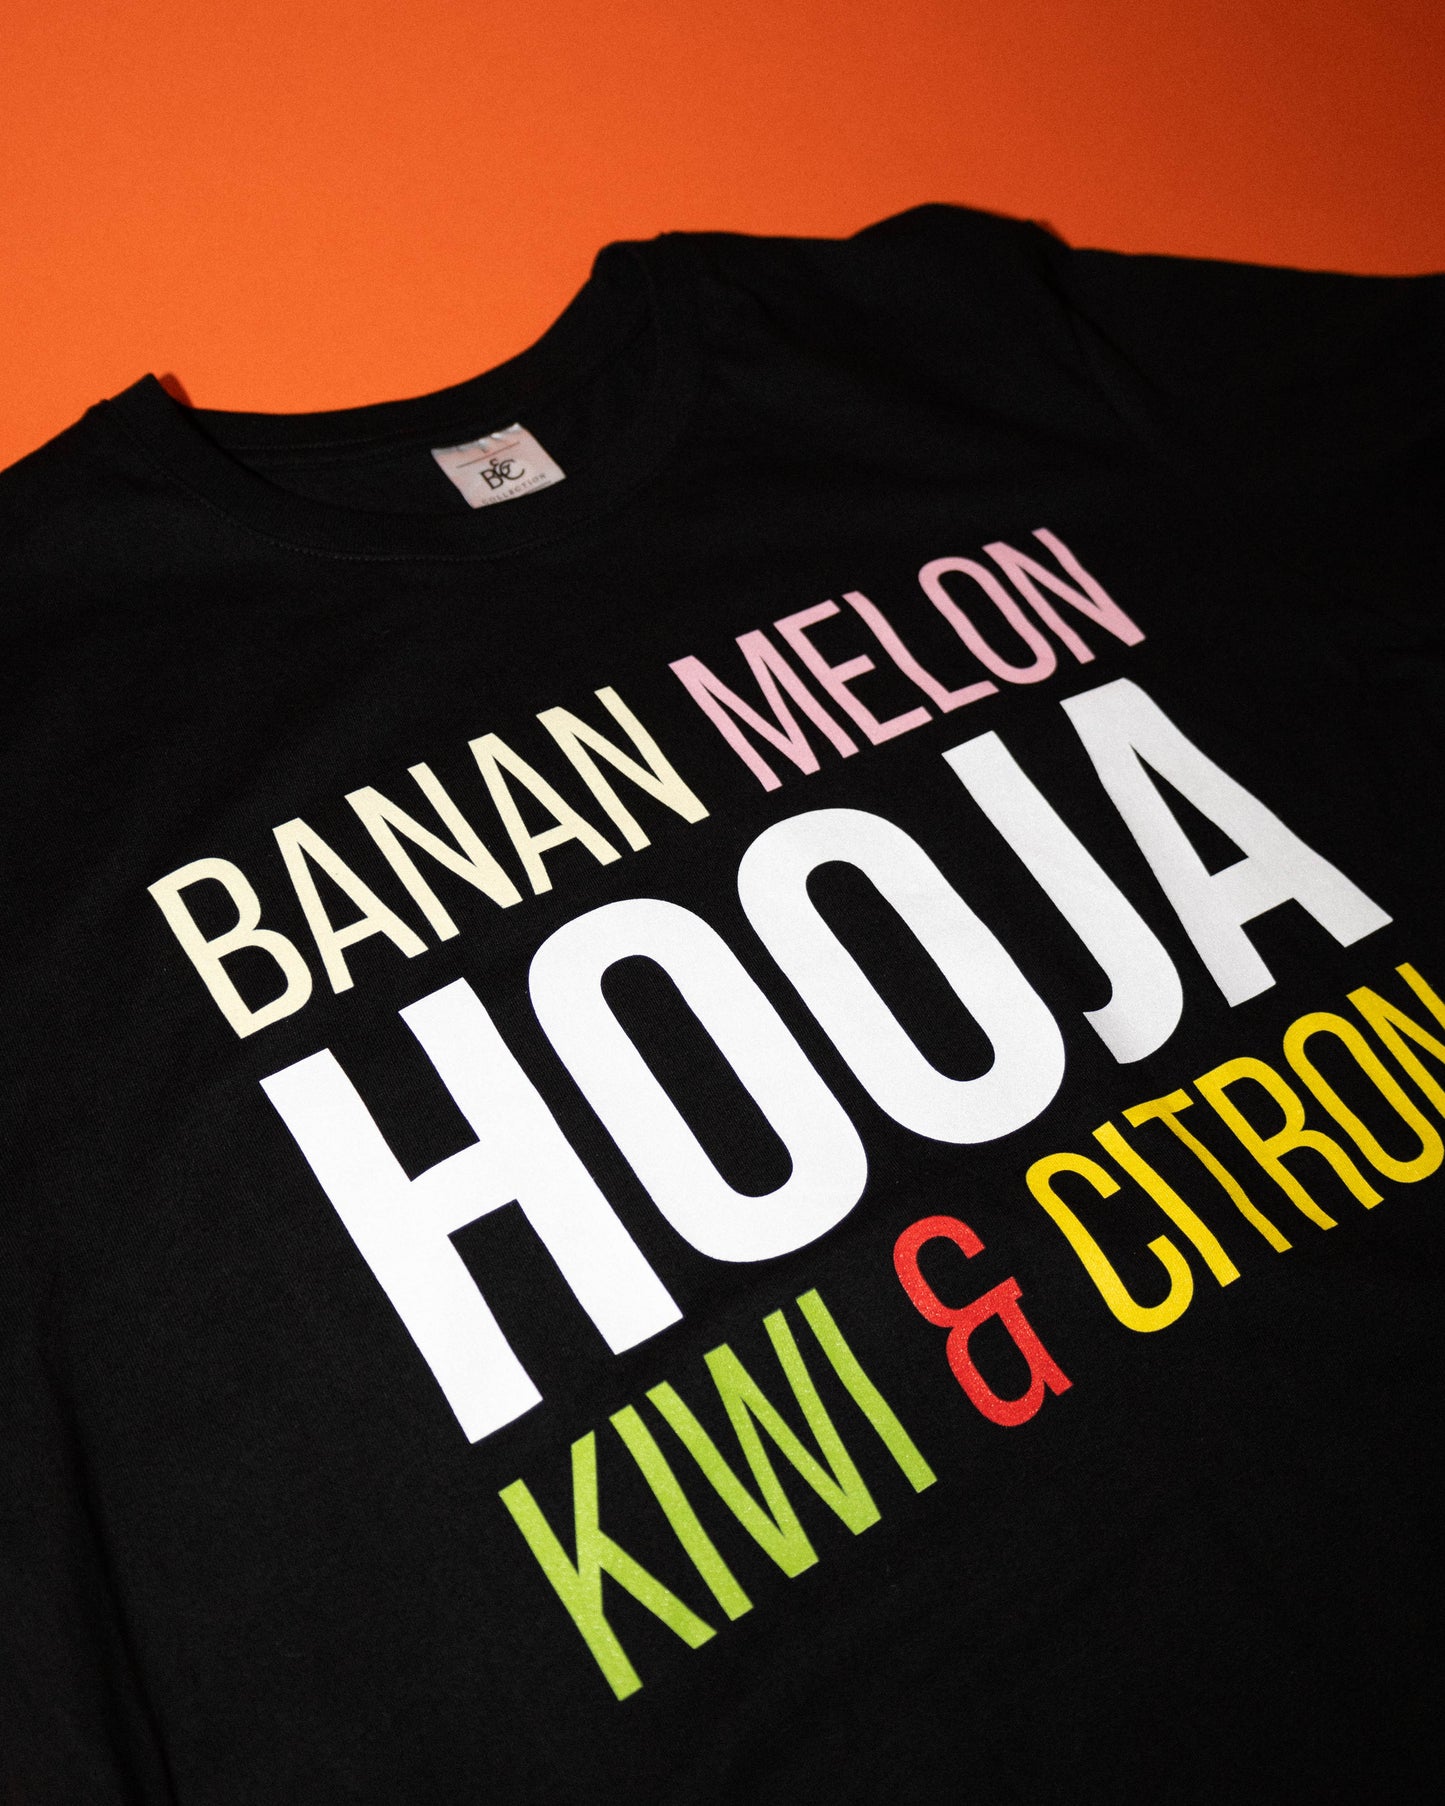 Banan Melon Kiwi & Citron t-shirt